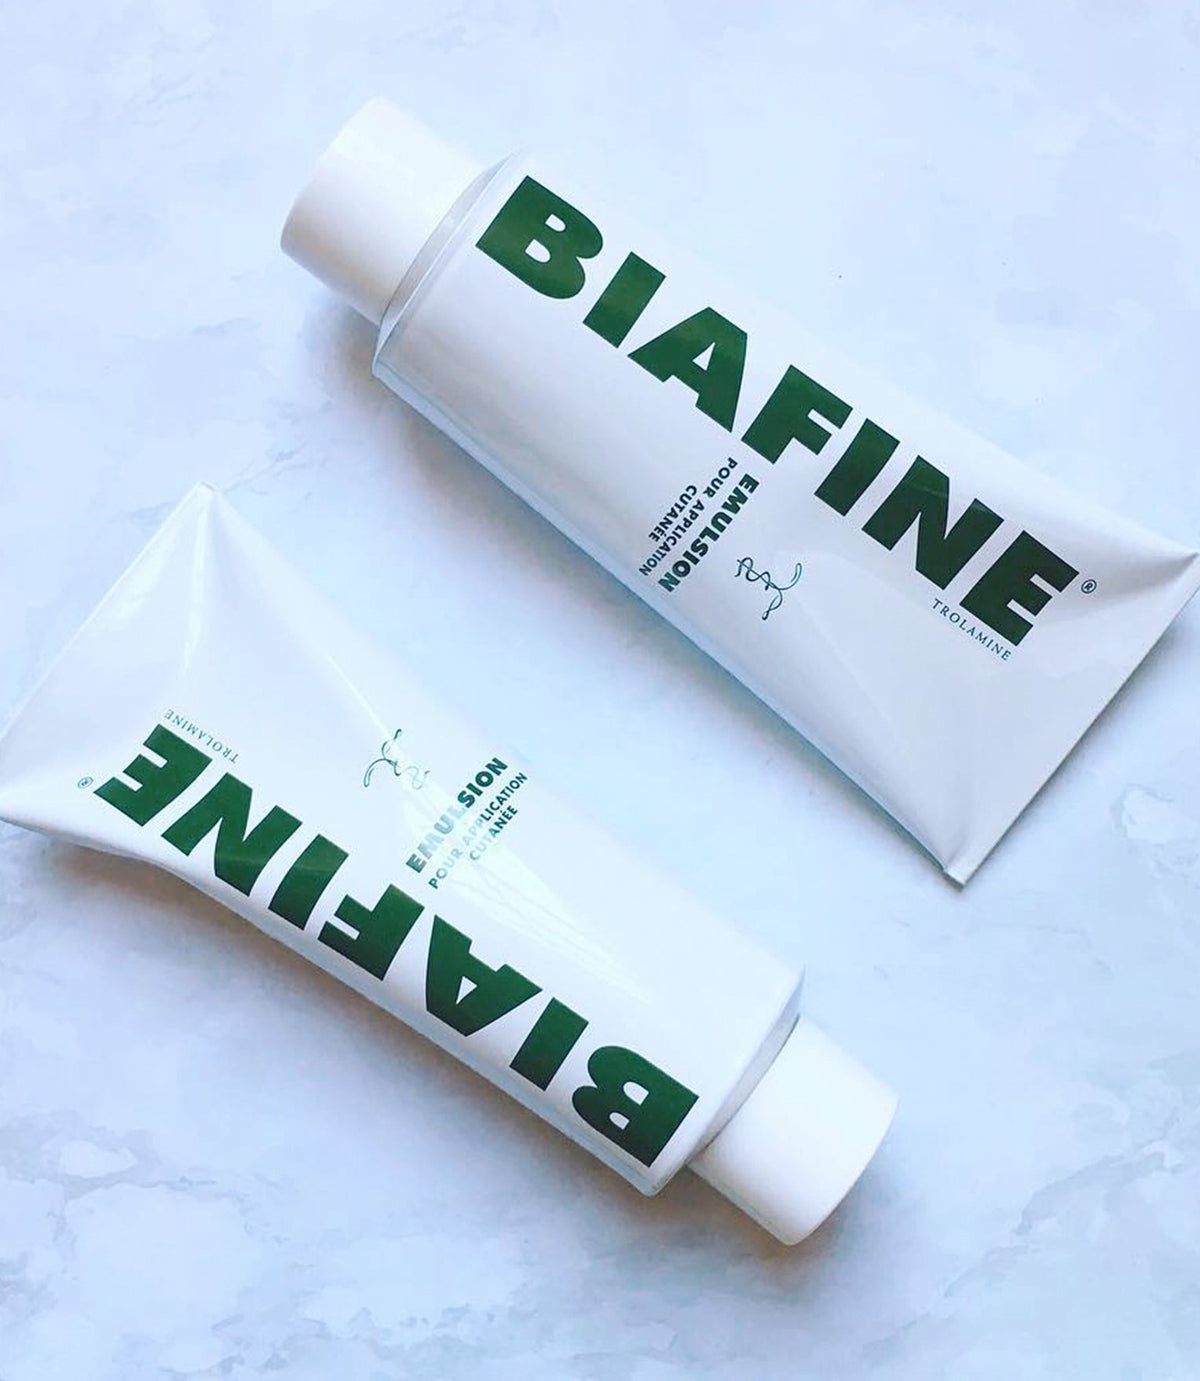 Biafine Emulsion Multipurpose Healing Cream for Burns* 186g